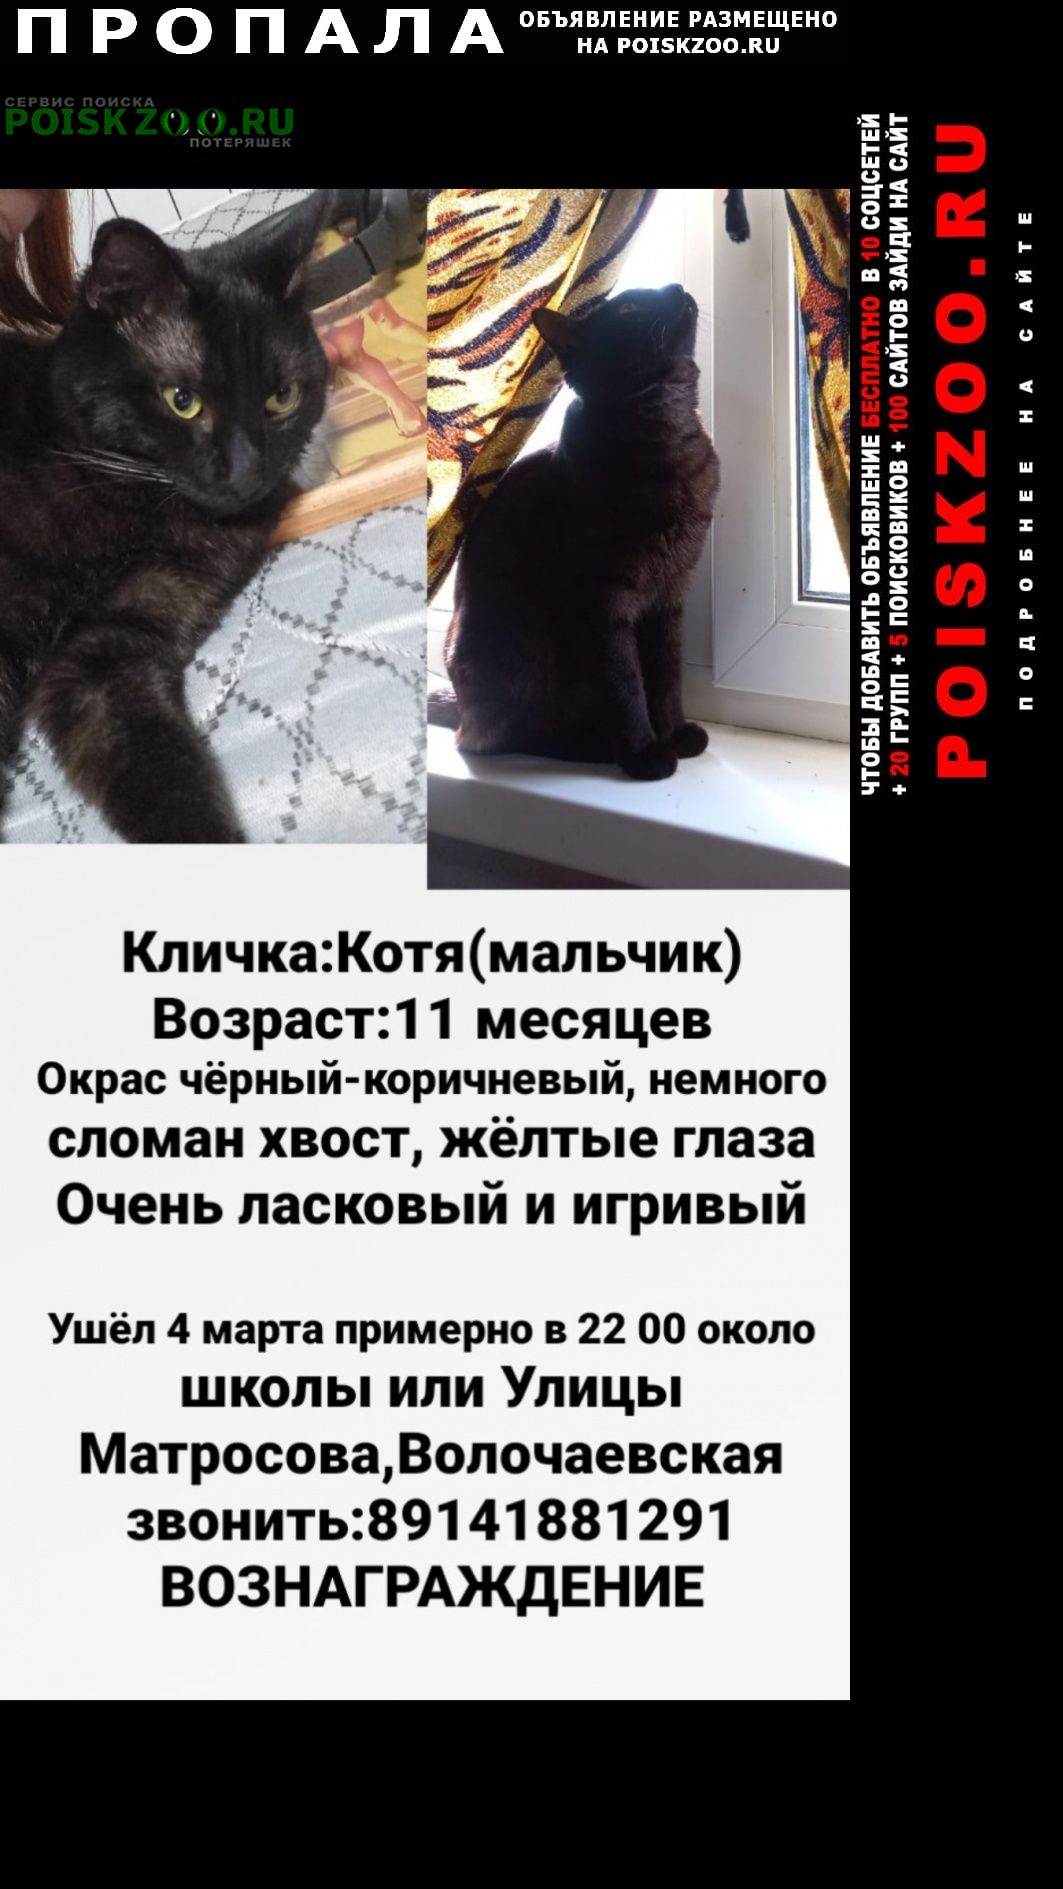 Хабаровск Пропал кот